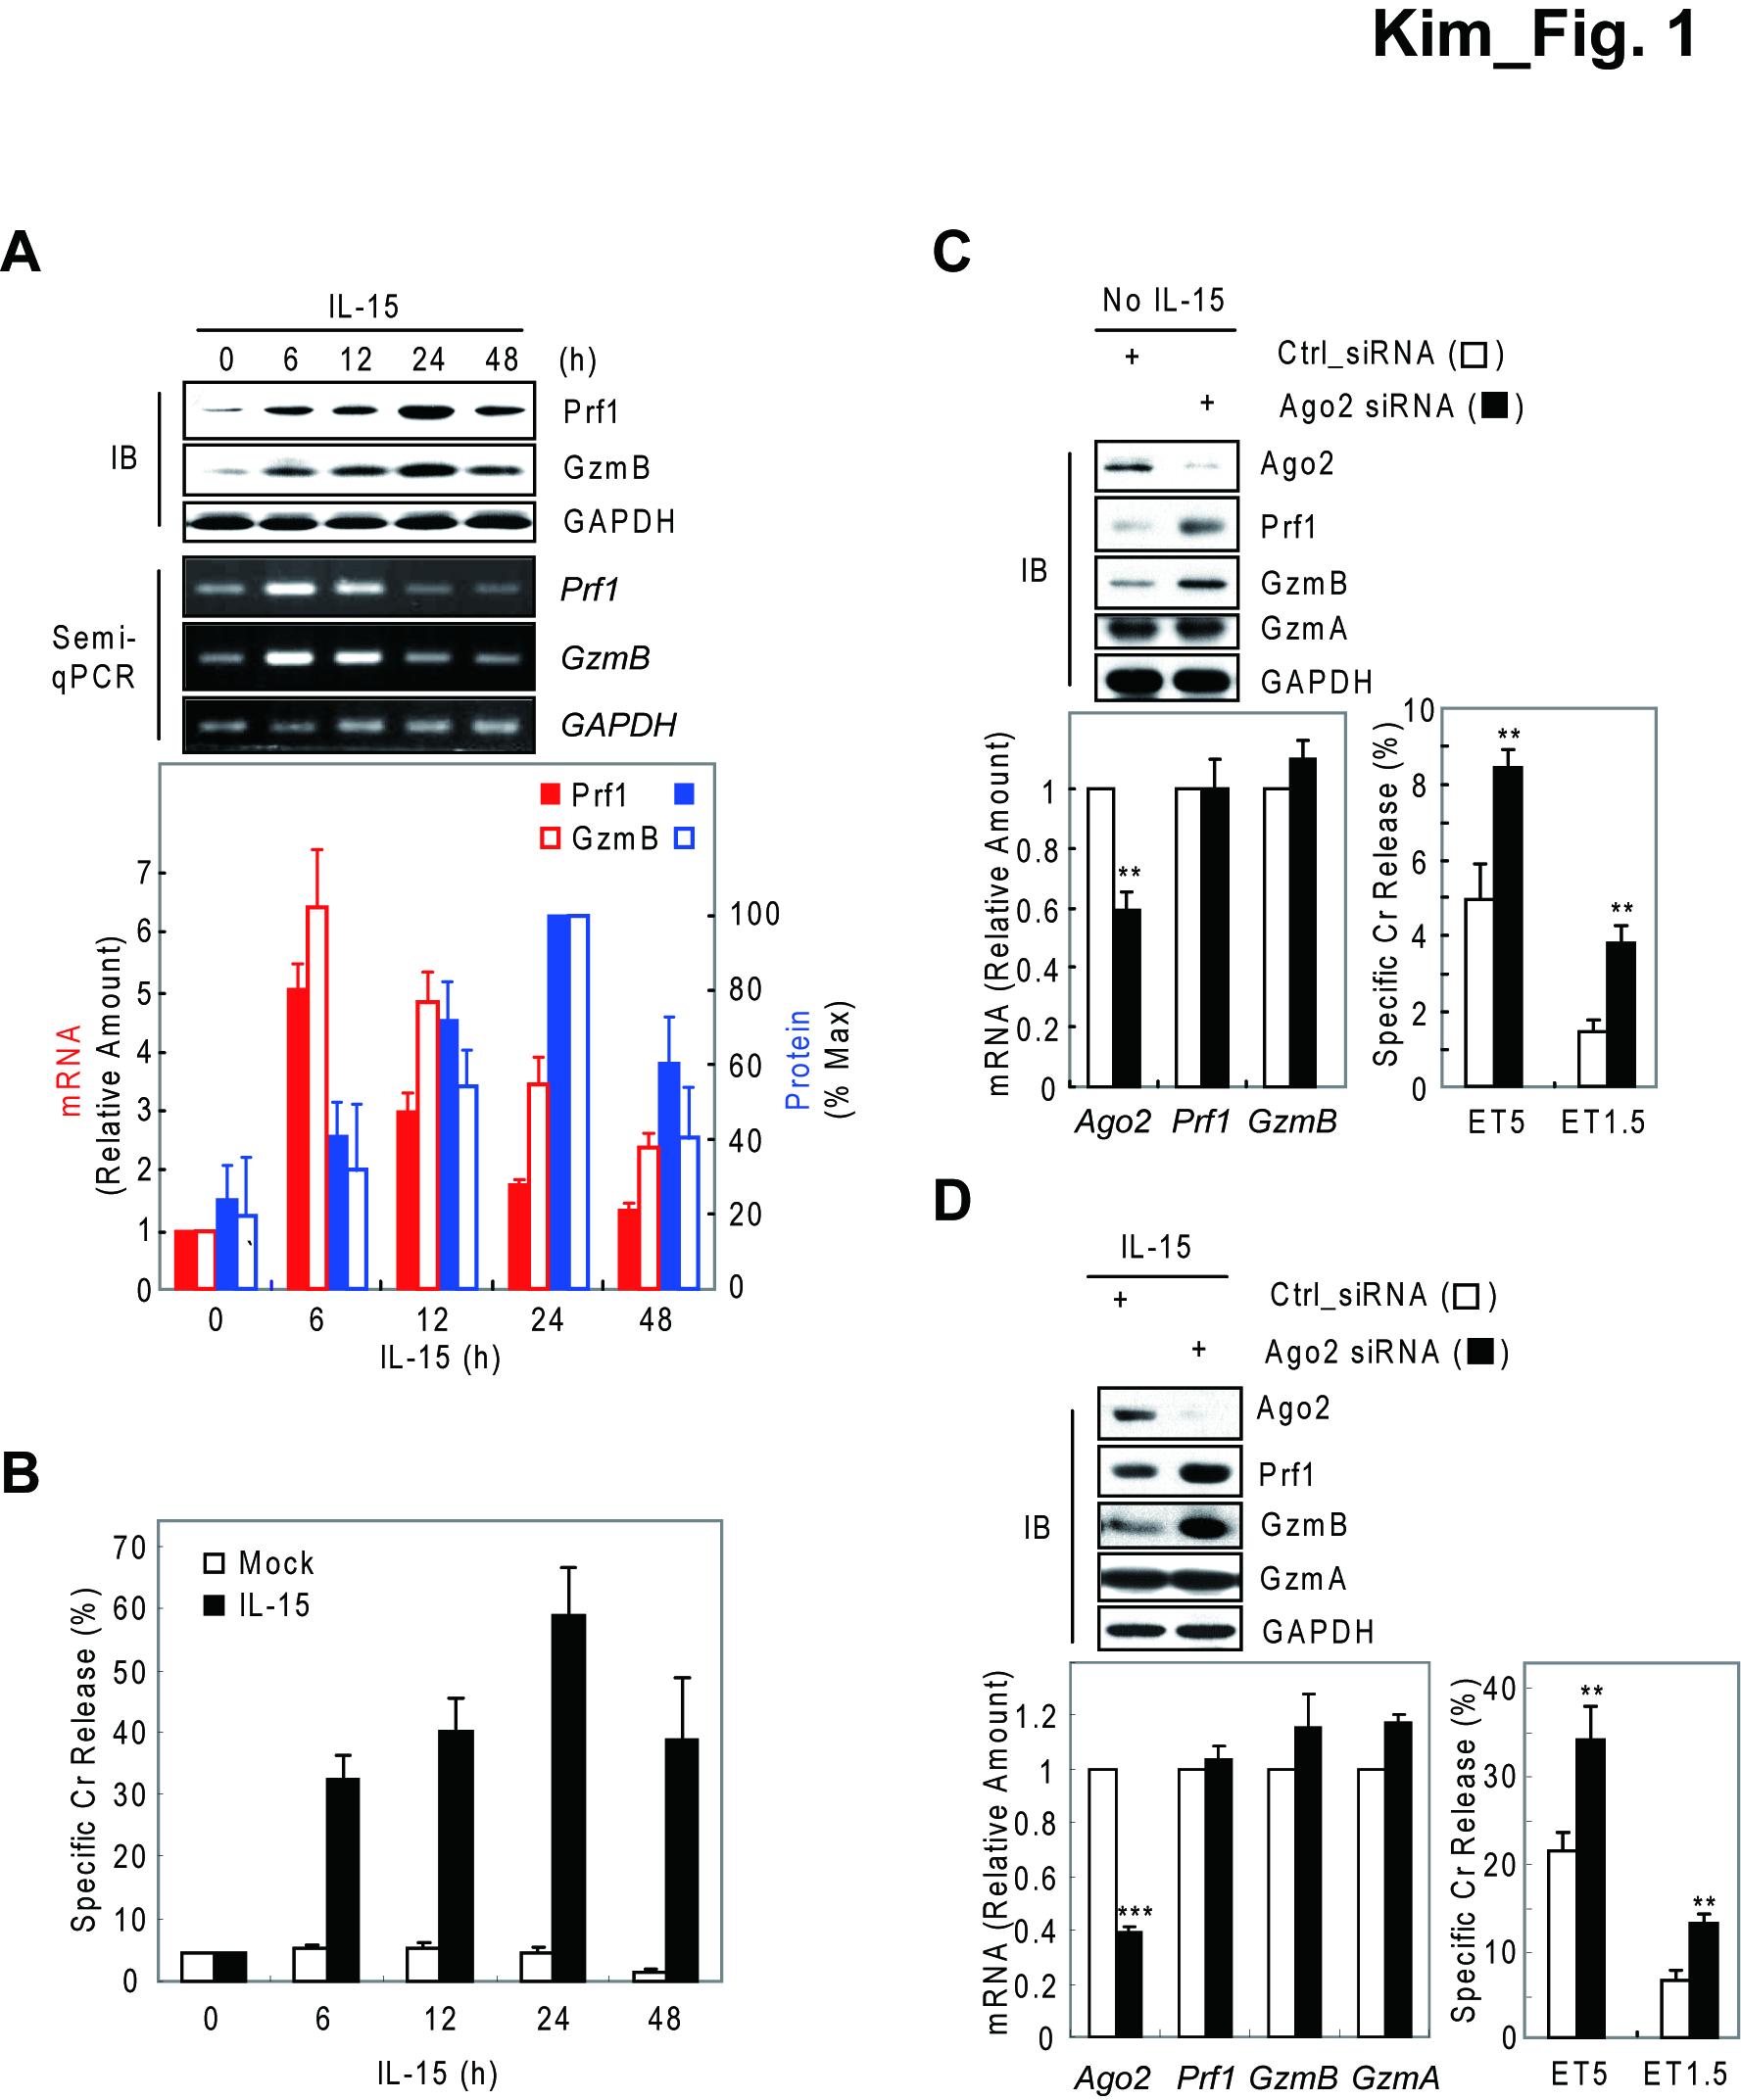 mNK 세포에서 IL-15에 의해 조절되는 Prf1 및 GzmB의 단백질과 mRNA의 발현 양상을 통한 MicroRNA의 관여